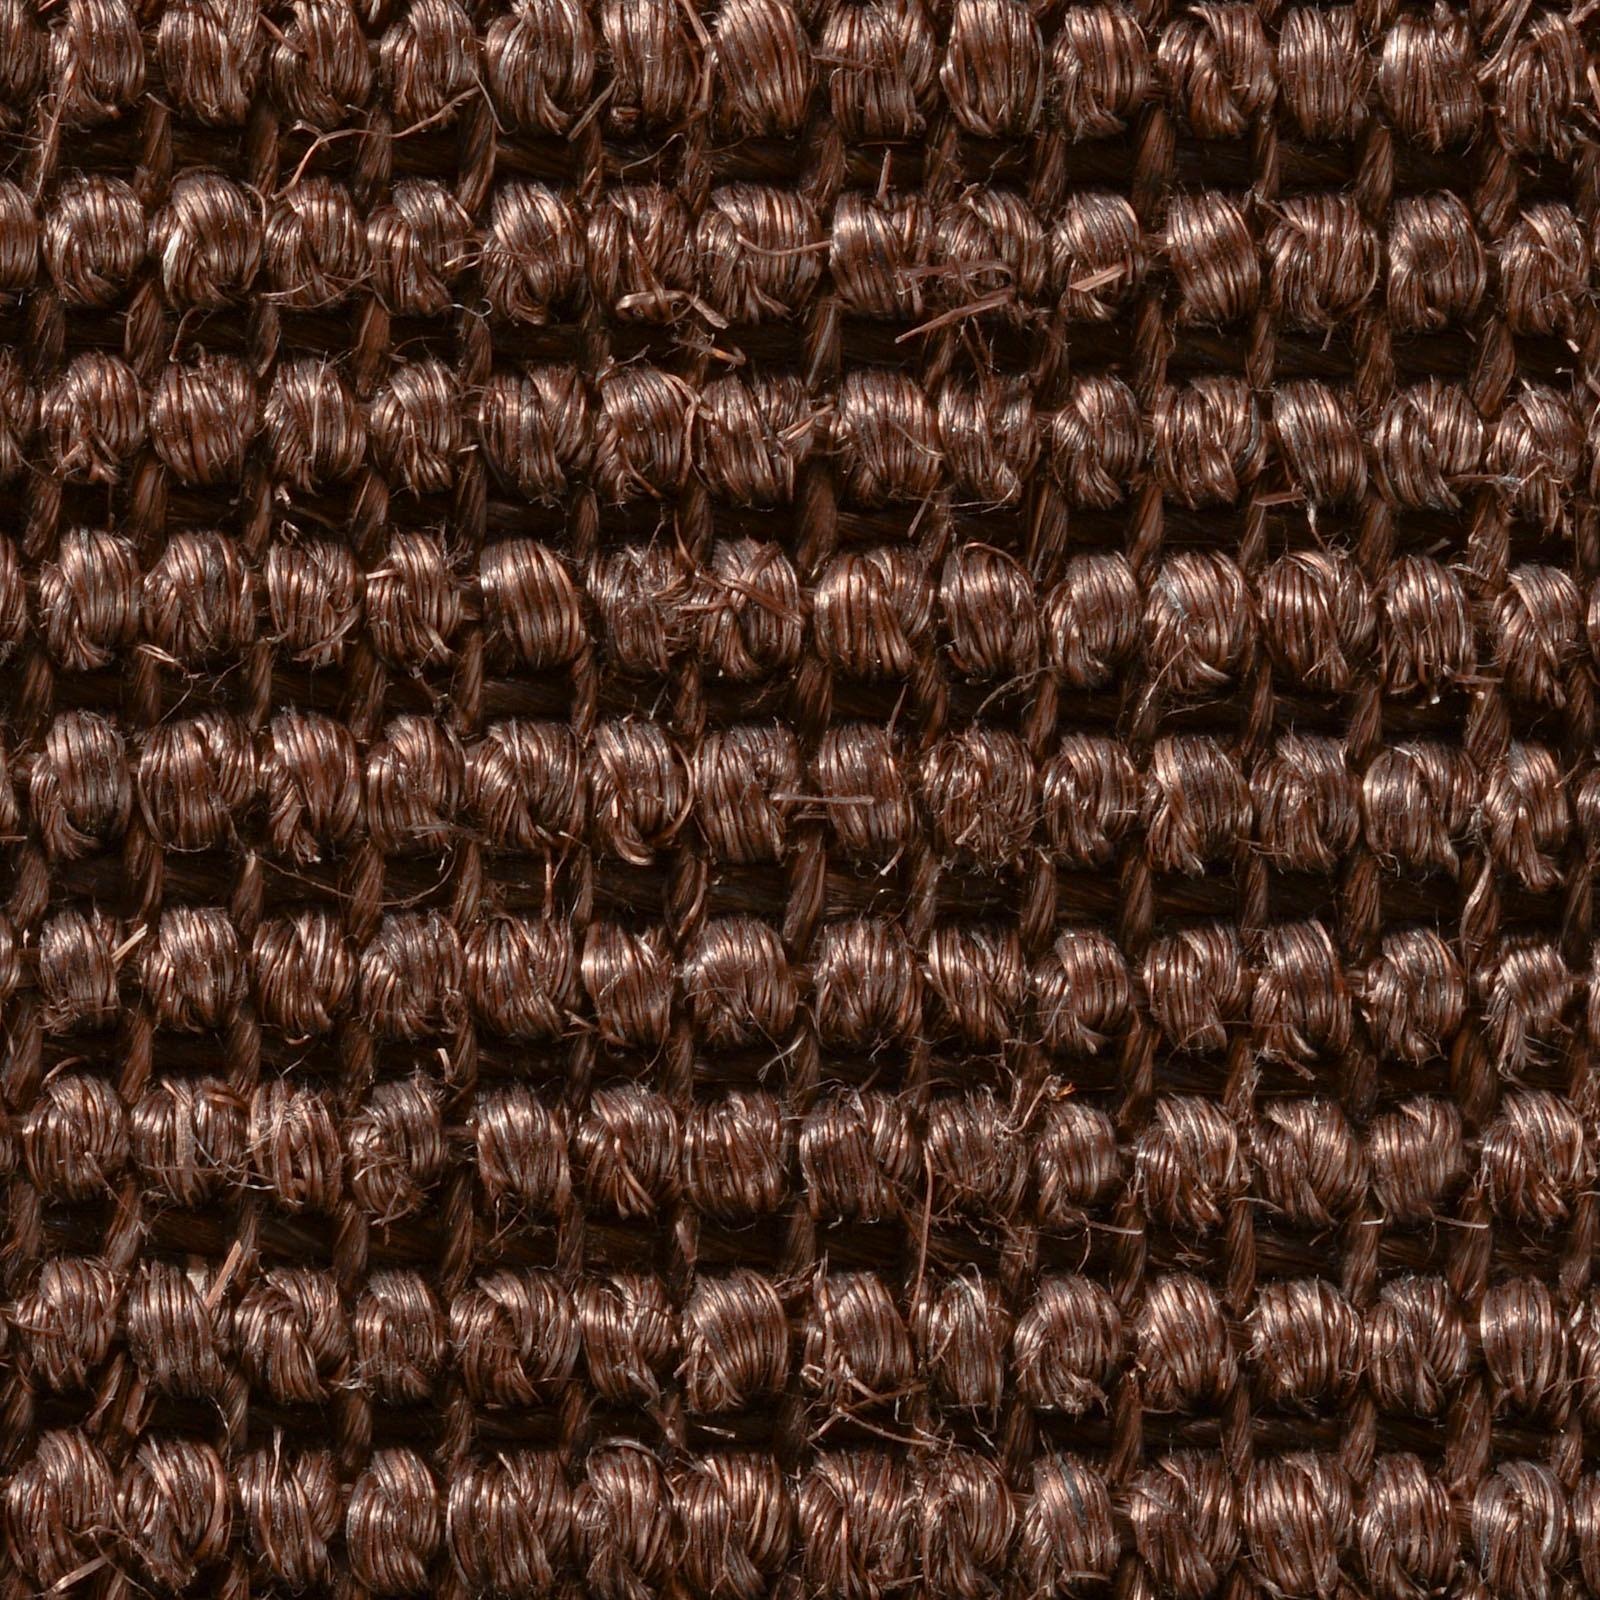 Dekowe Stufenmatte »Mara S2«, halbrund, 100% Sisal, große Farbauswahl, selbstklebend, auch als Set 15 Stück